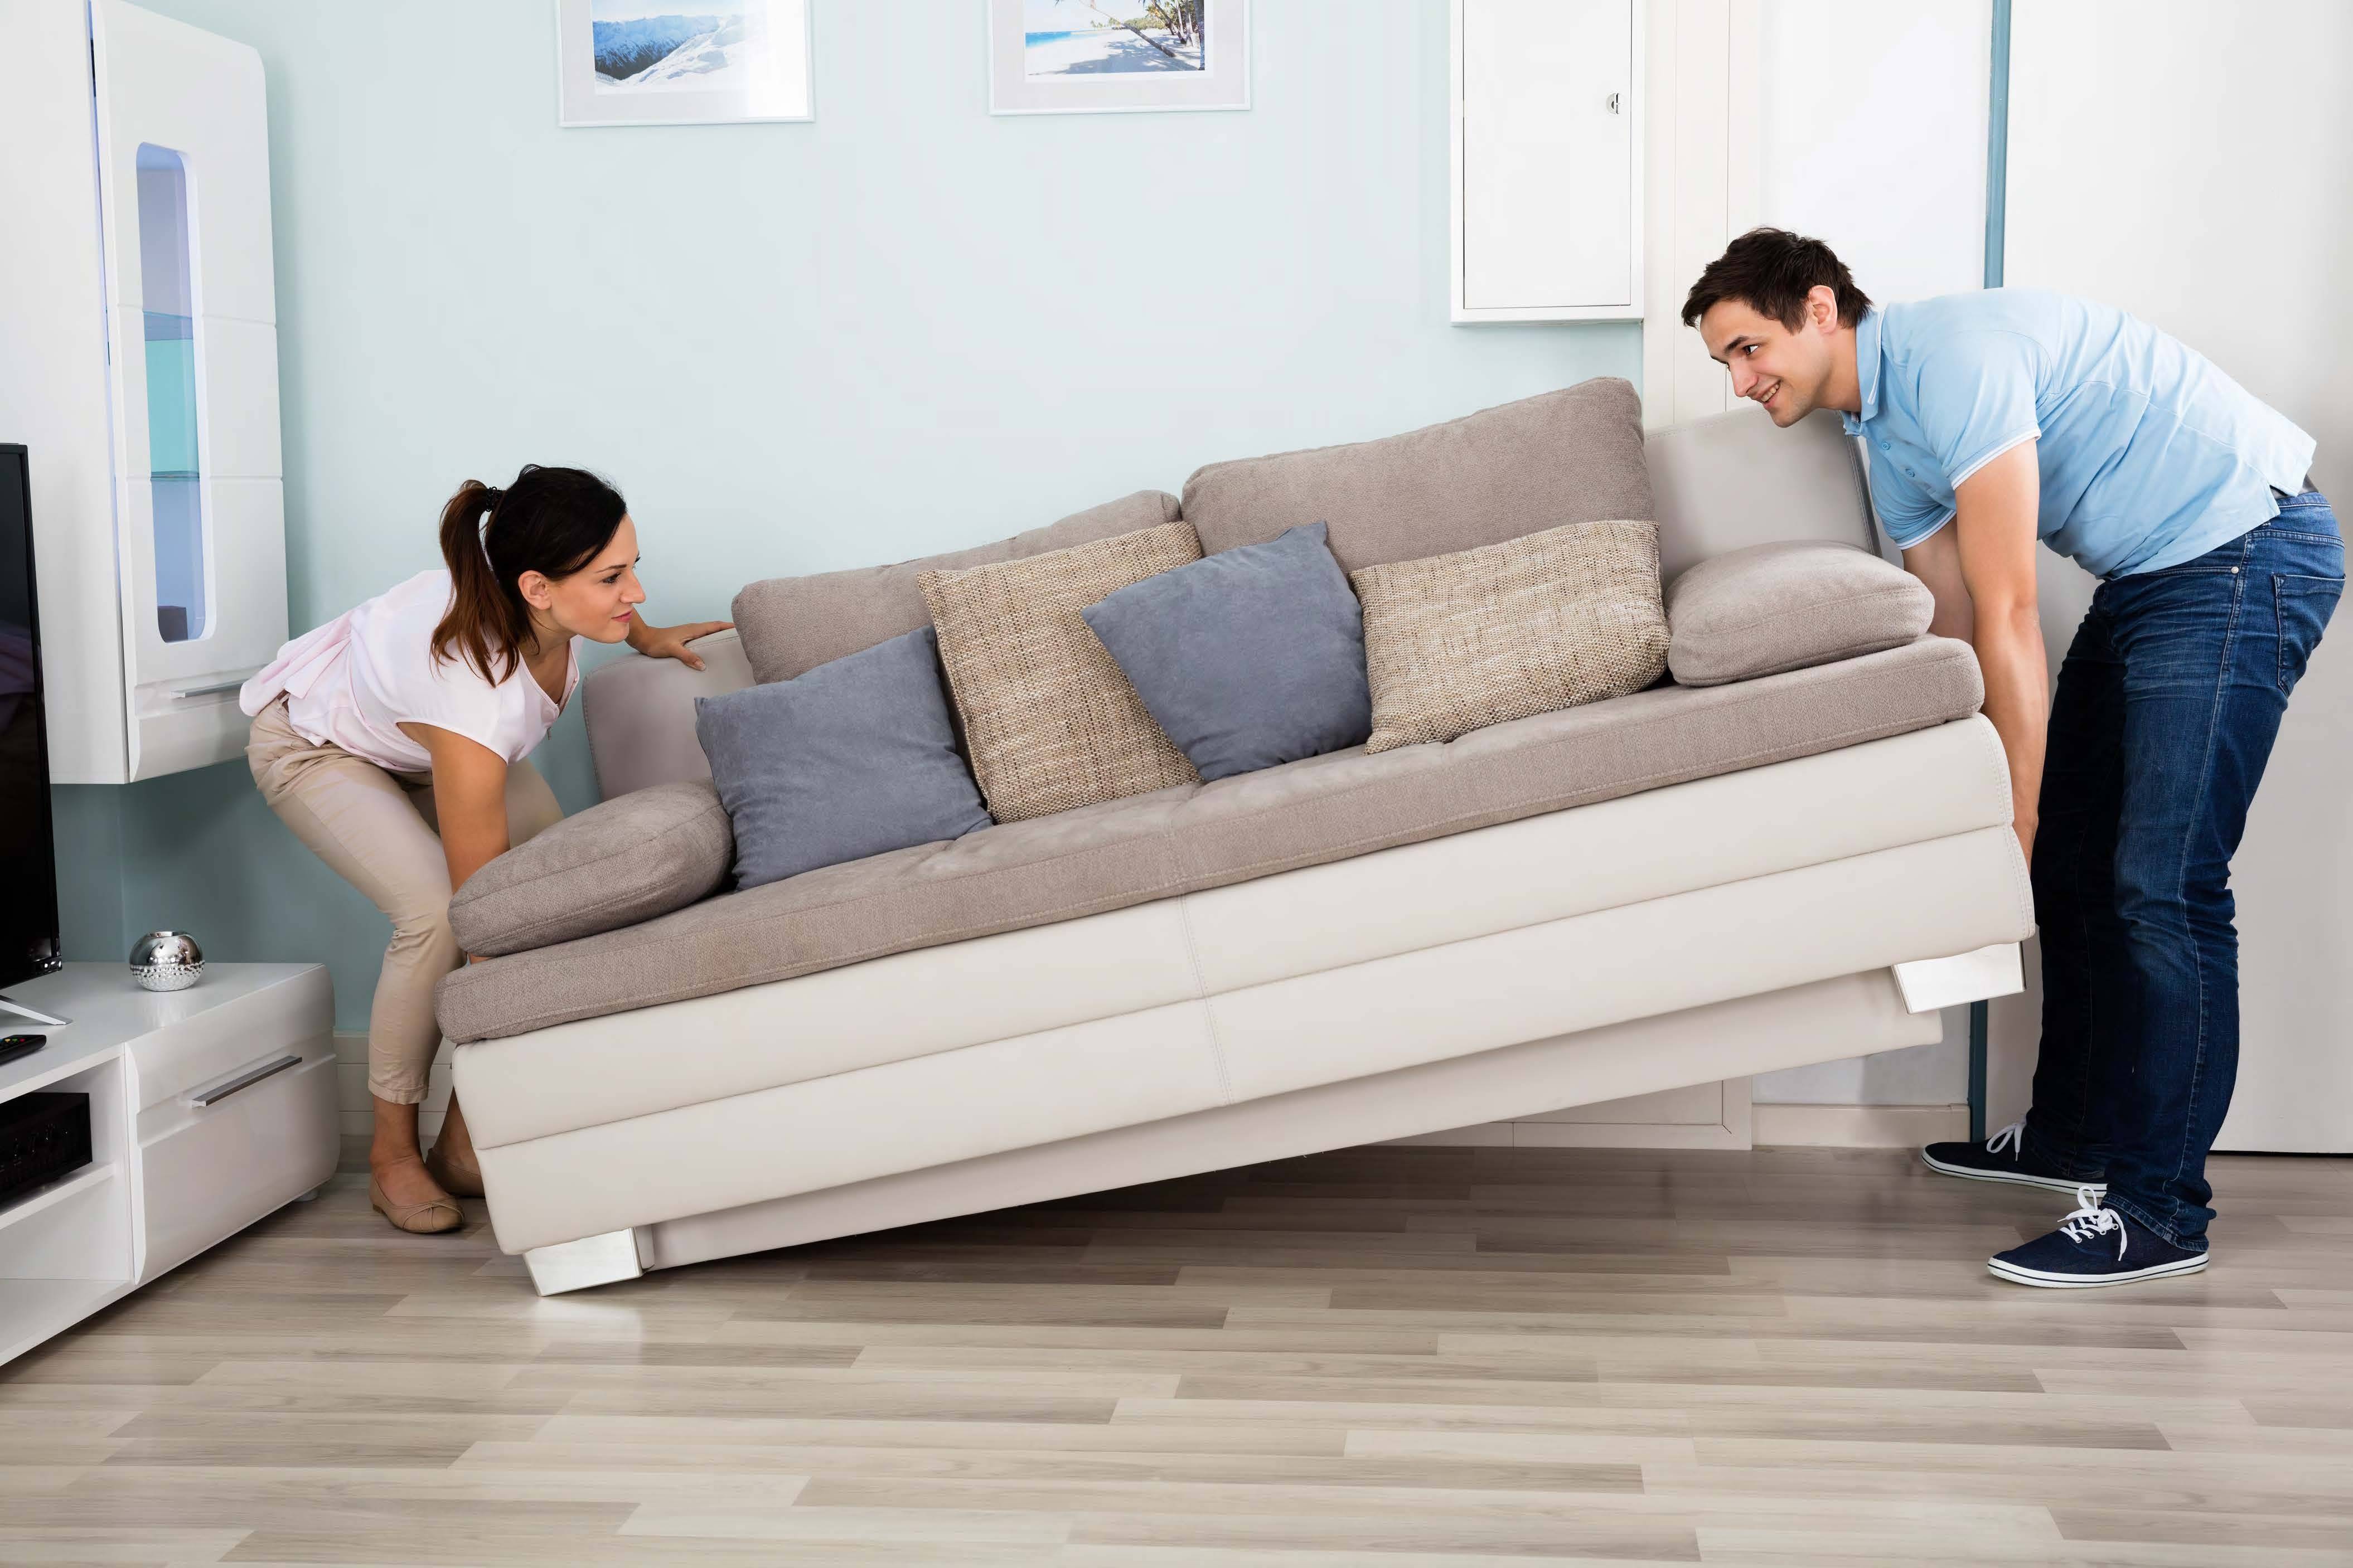 Как выбрать диван в гостиную? | главные правила и критерии качества